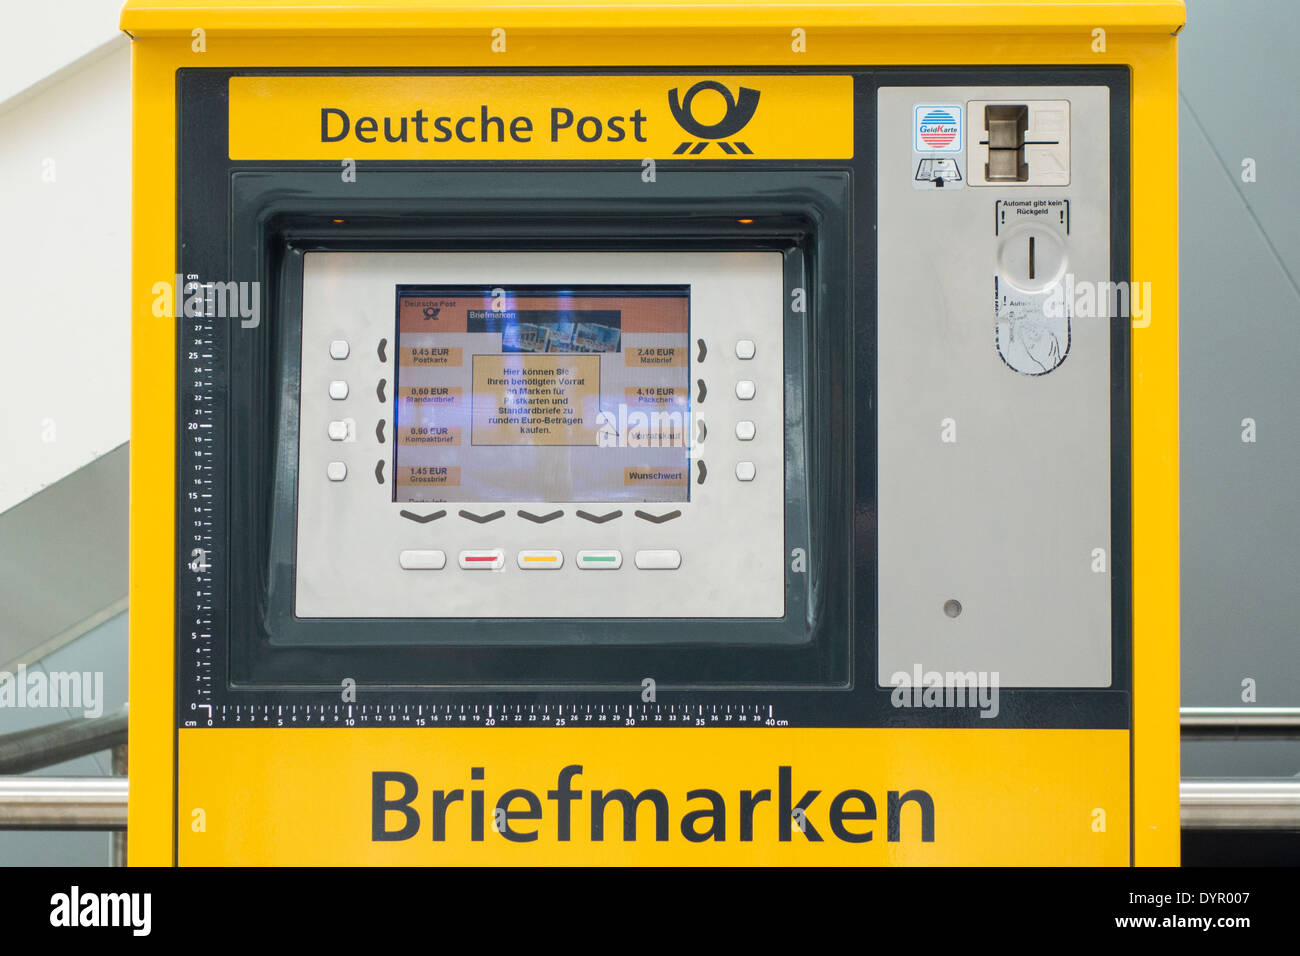 Stempel vending Deutsche Post in München Flughafen, Bayern, Deutschland Stockfoto